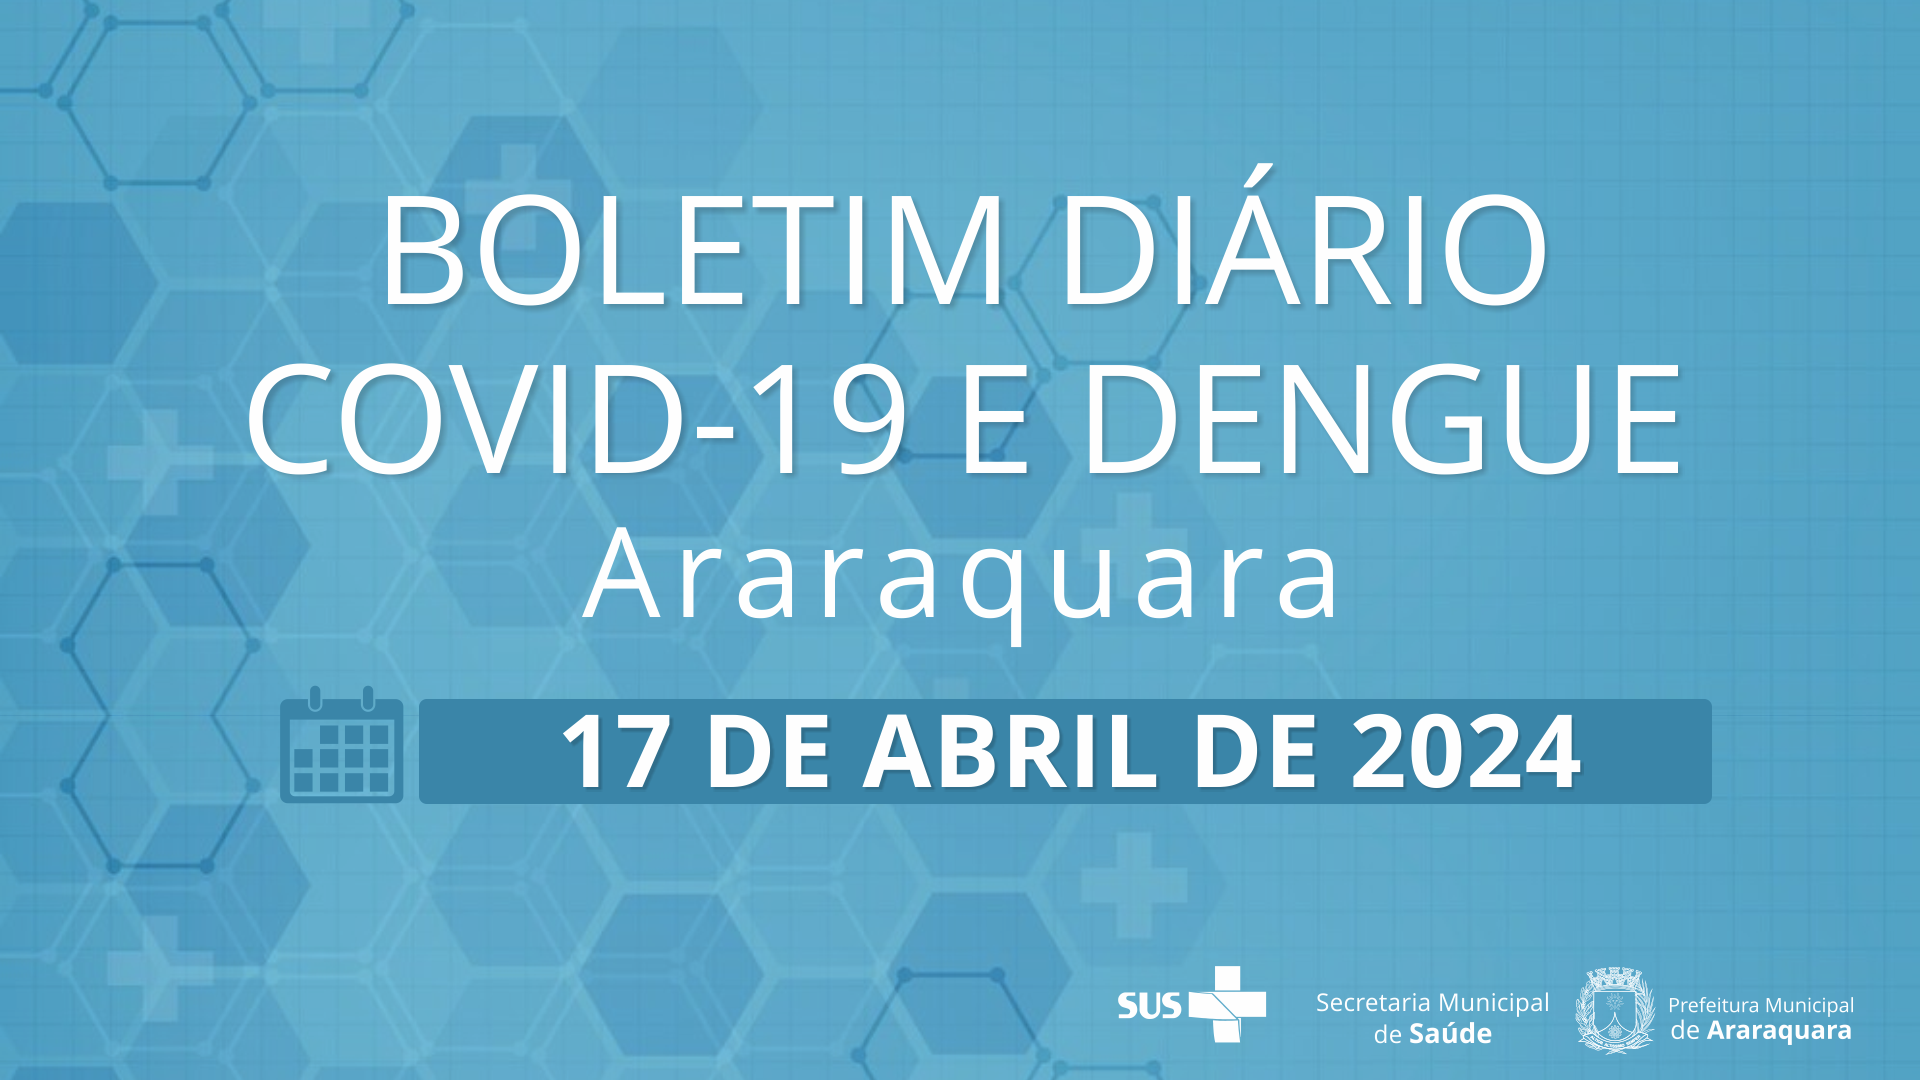 Boletim Diário no 37 – 17 de abril de 2024  - Situação epidemiológica: Covid-19 e dengue em Araraquara